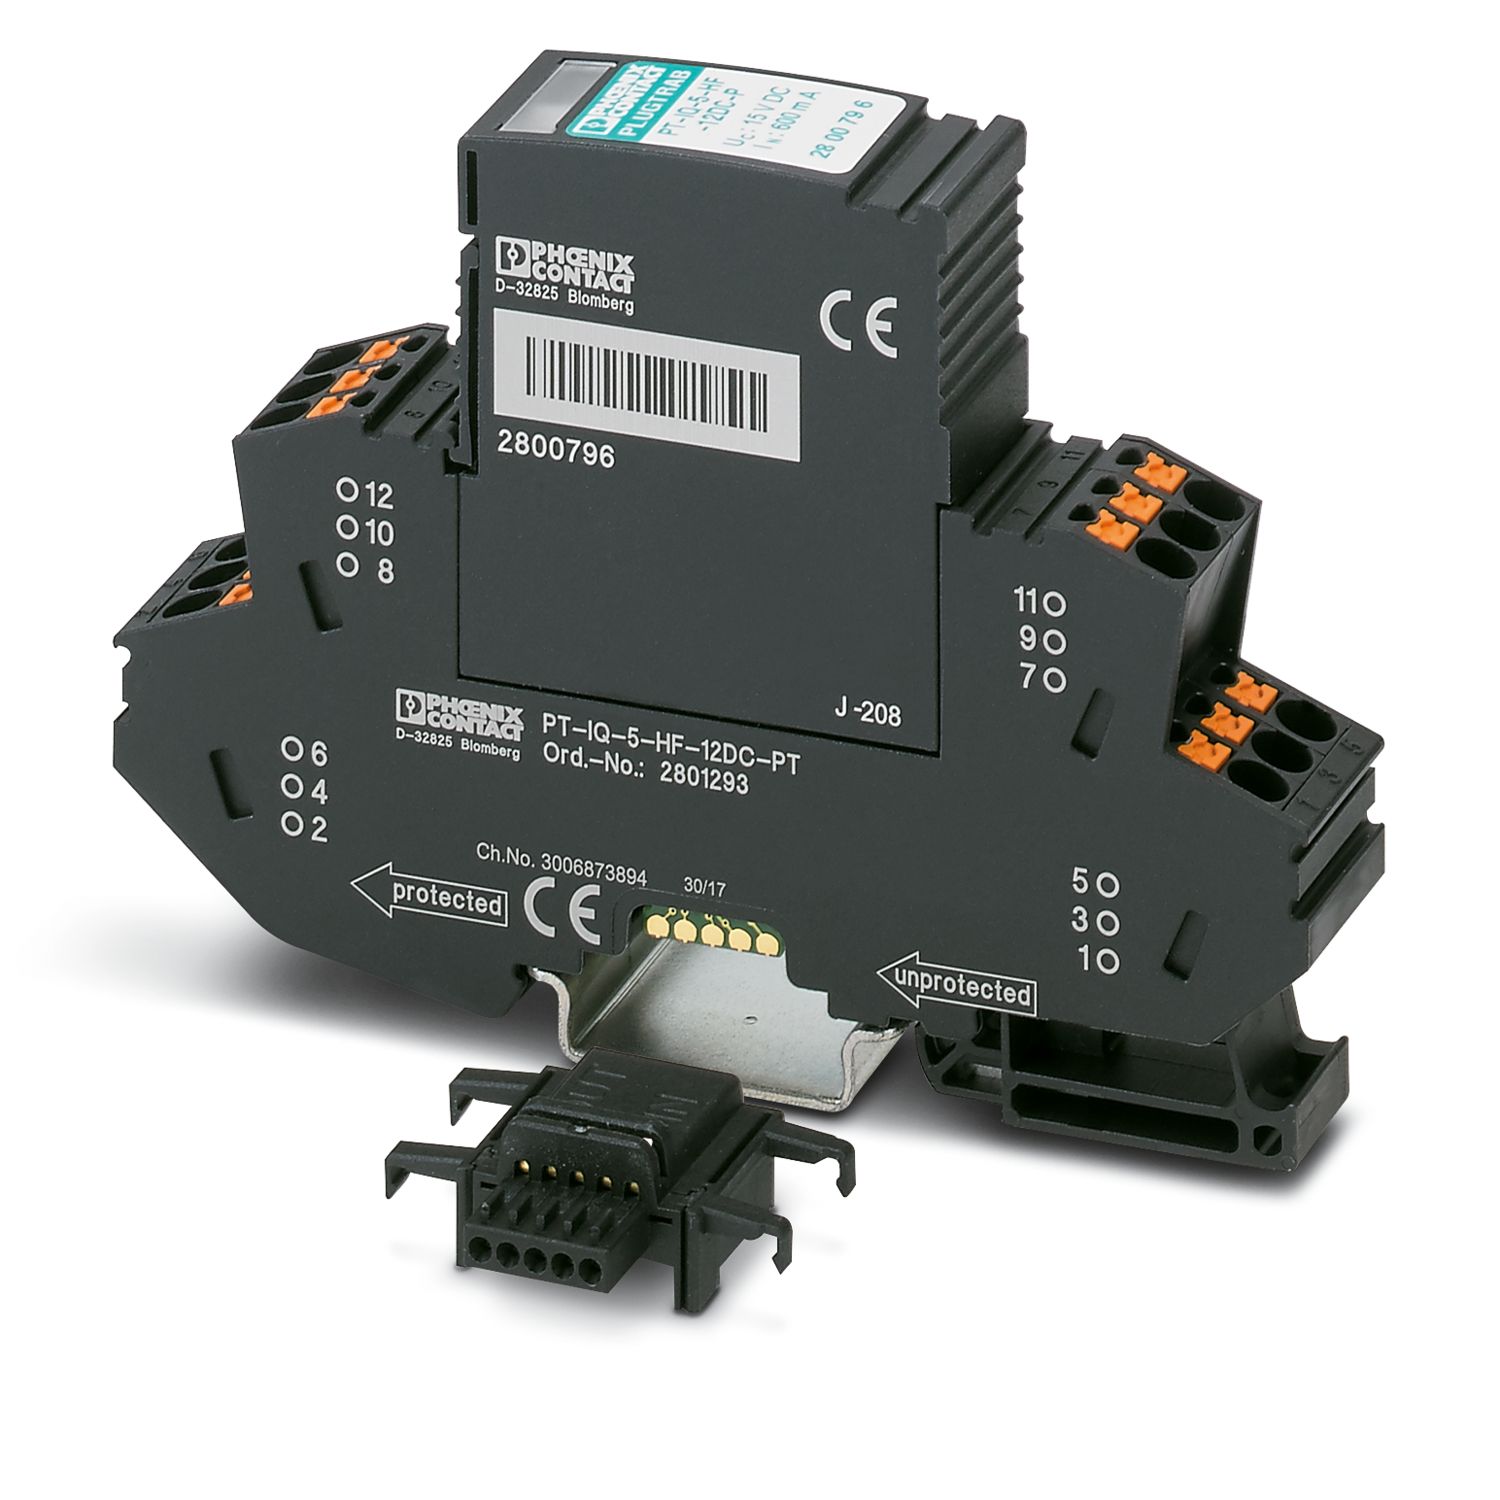 Thiết bị chống sét lan truyền Phoenix Contact: PT-IQ-5-HF-12DC-PT - Surge protection device (2801293)